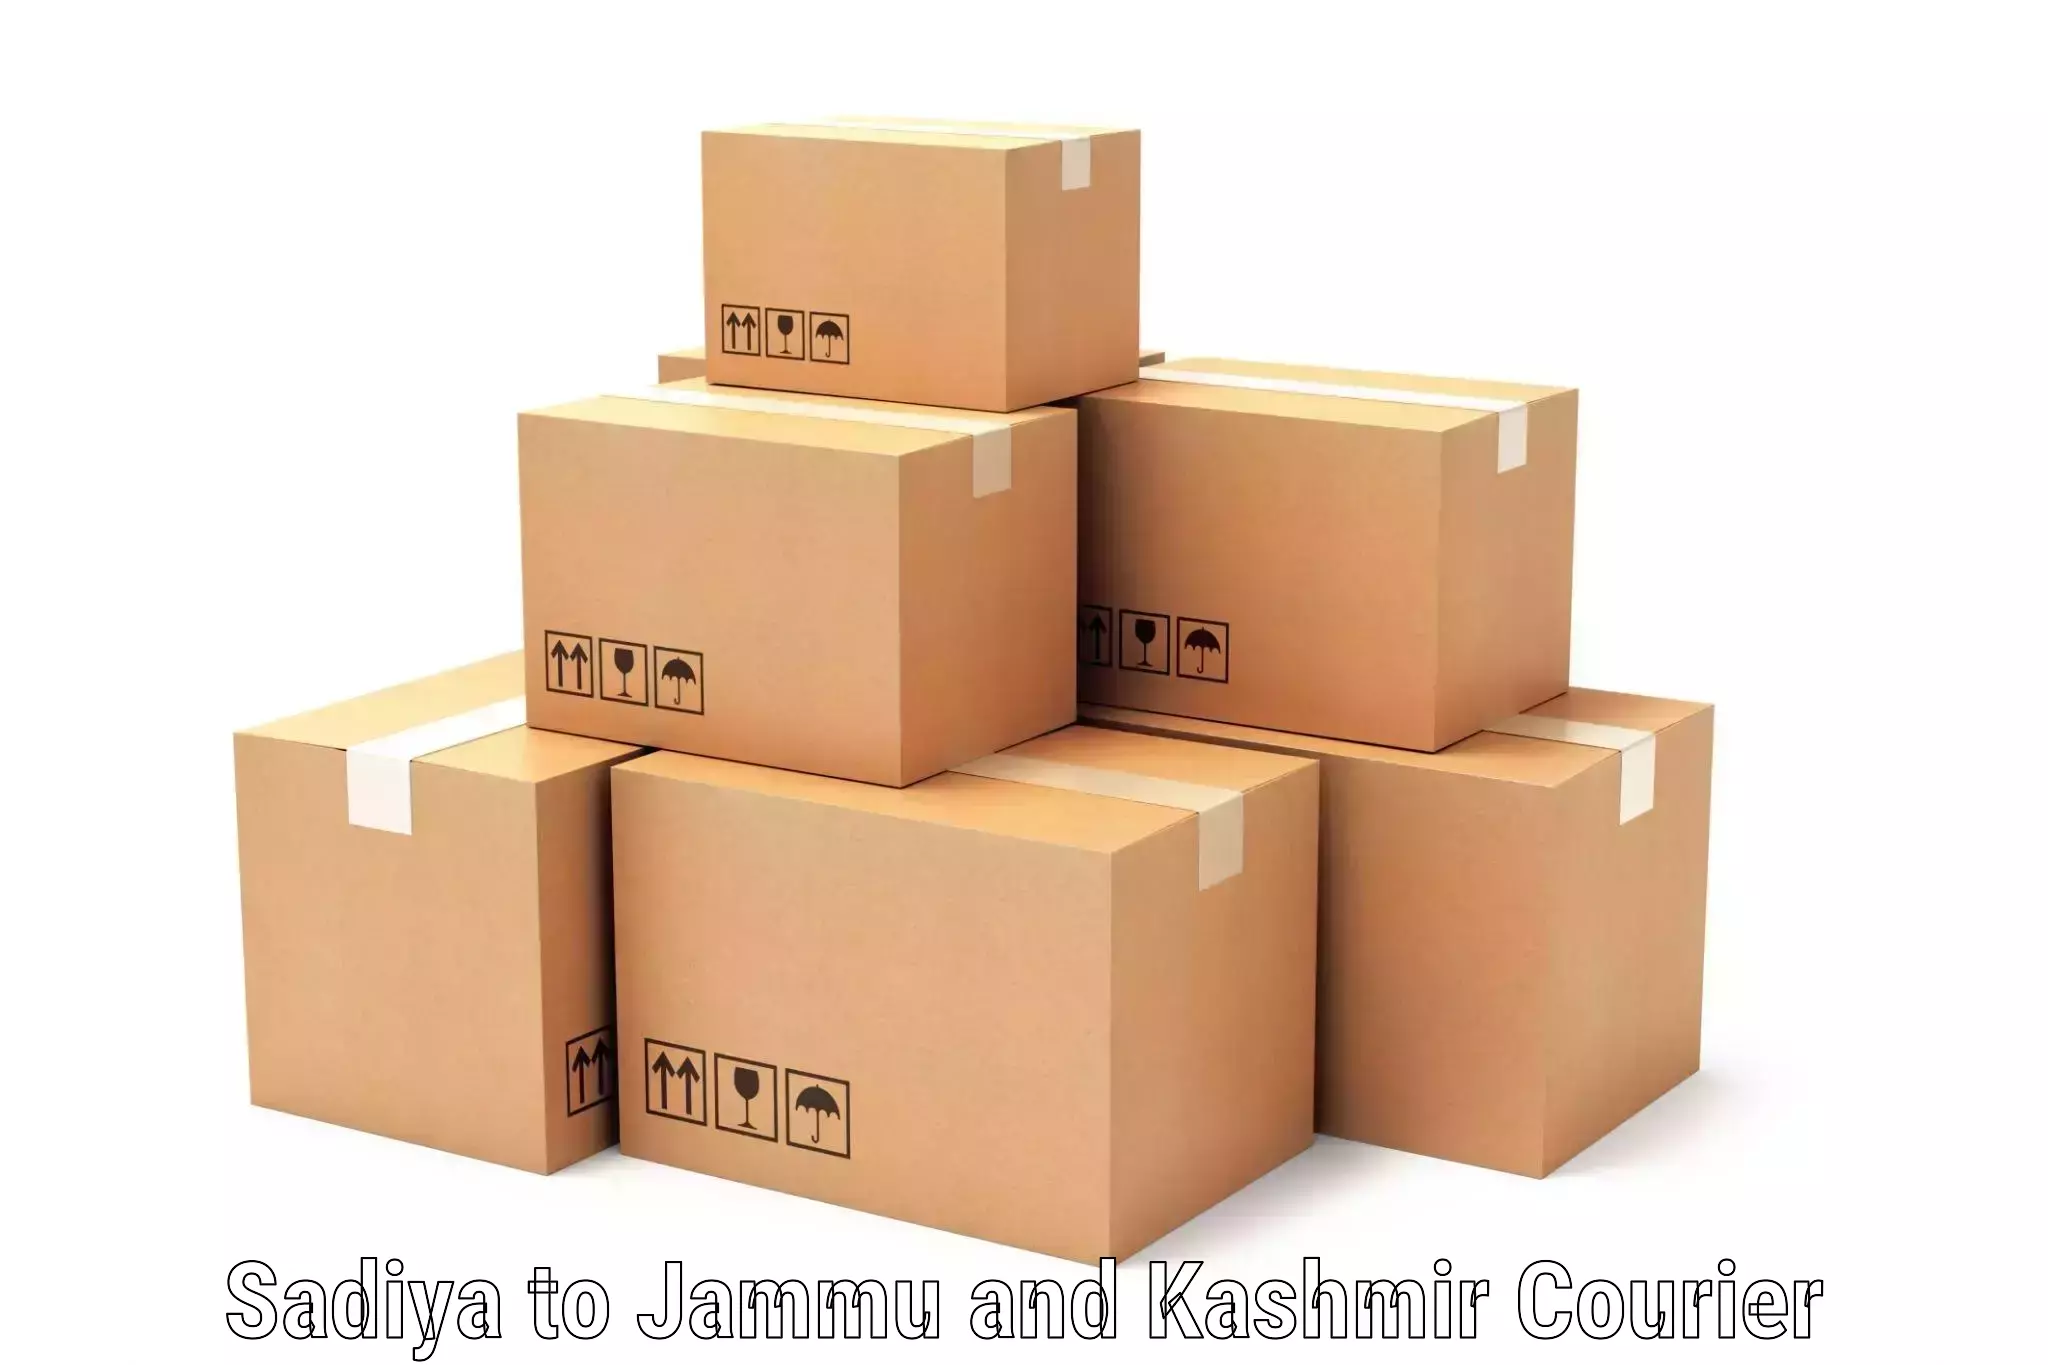 Global delivery options Sadiya to NIT Srinagar